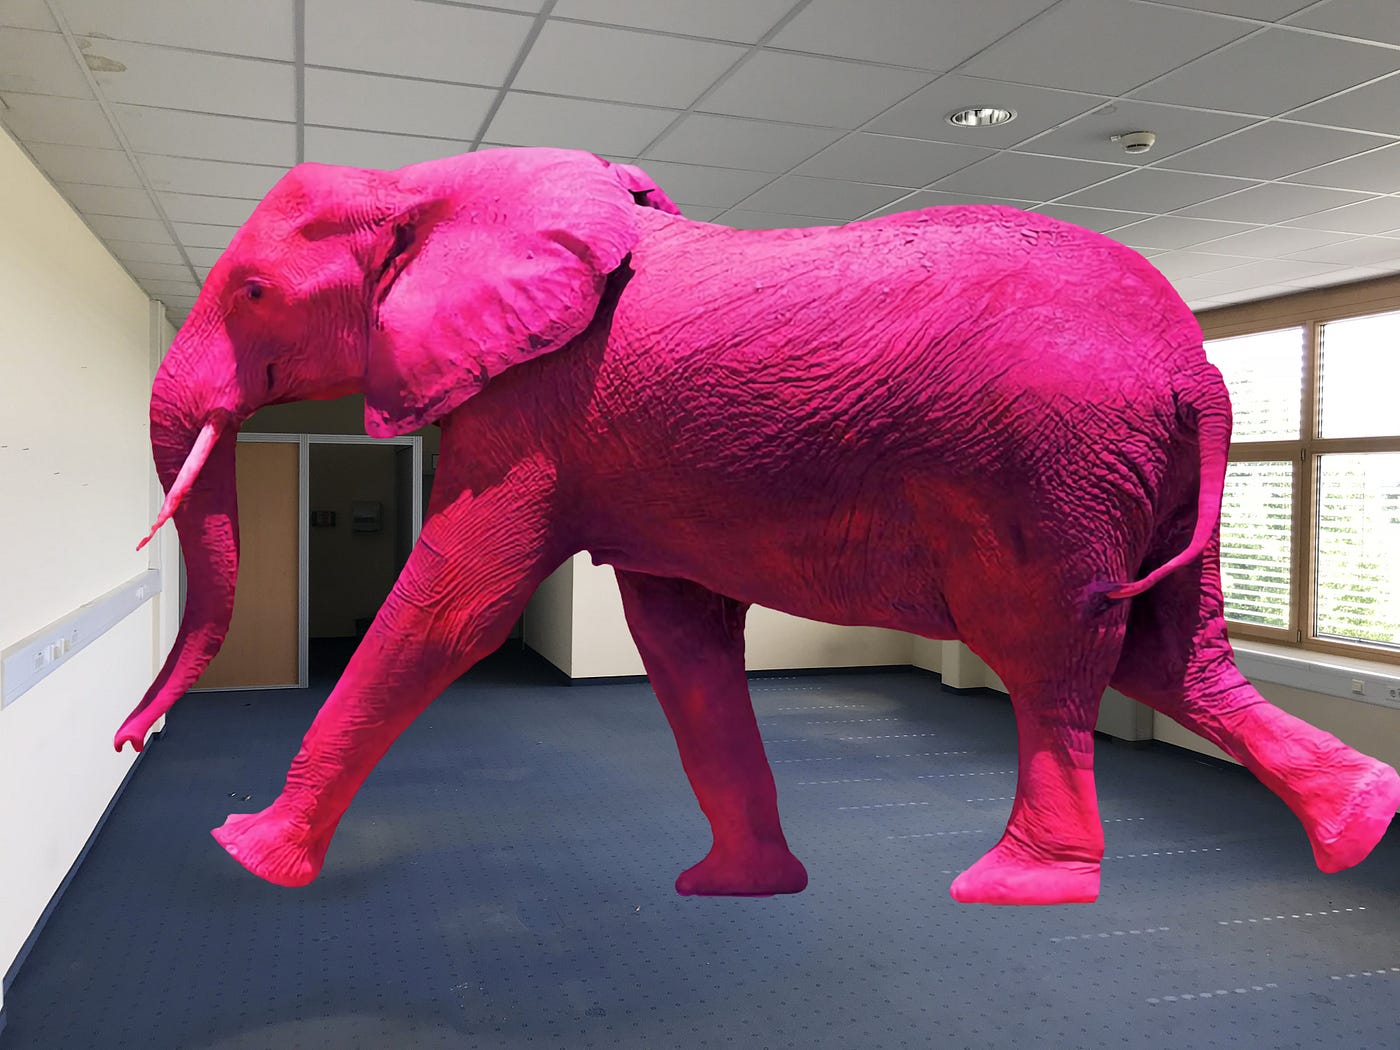 Il grosso, enorme elefante rosa nella stanza | by Fulvio Romanin | Medium